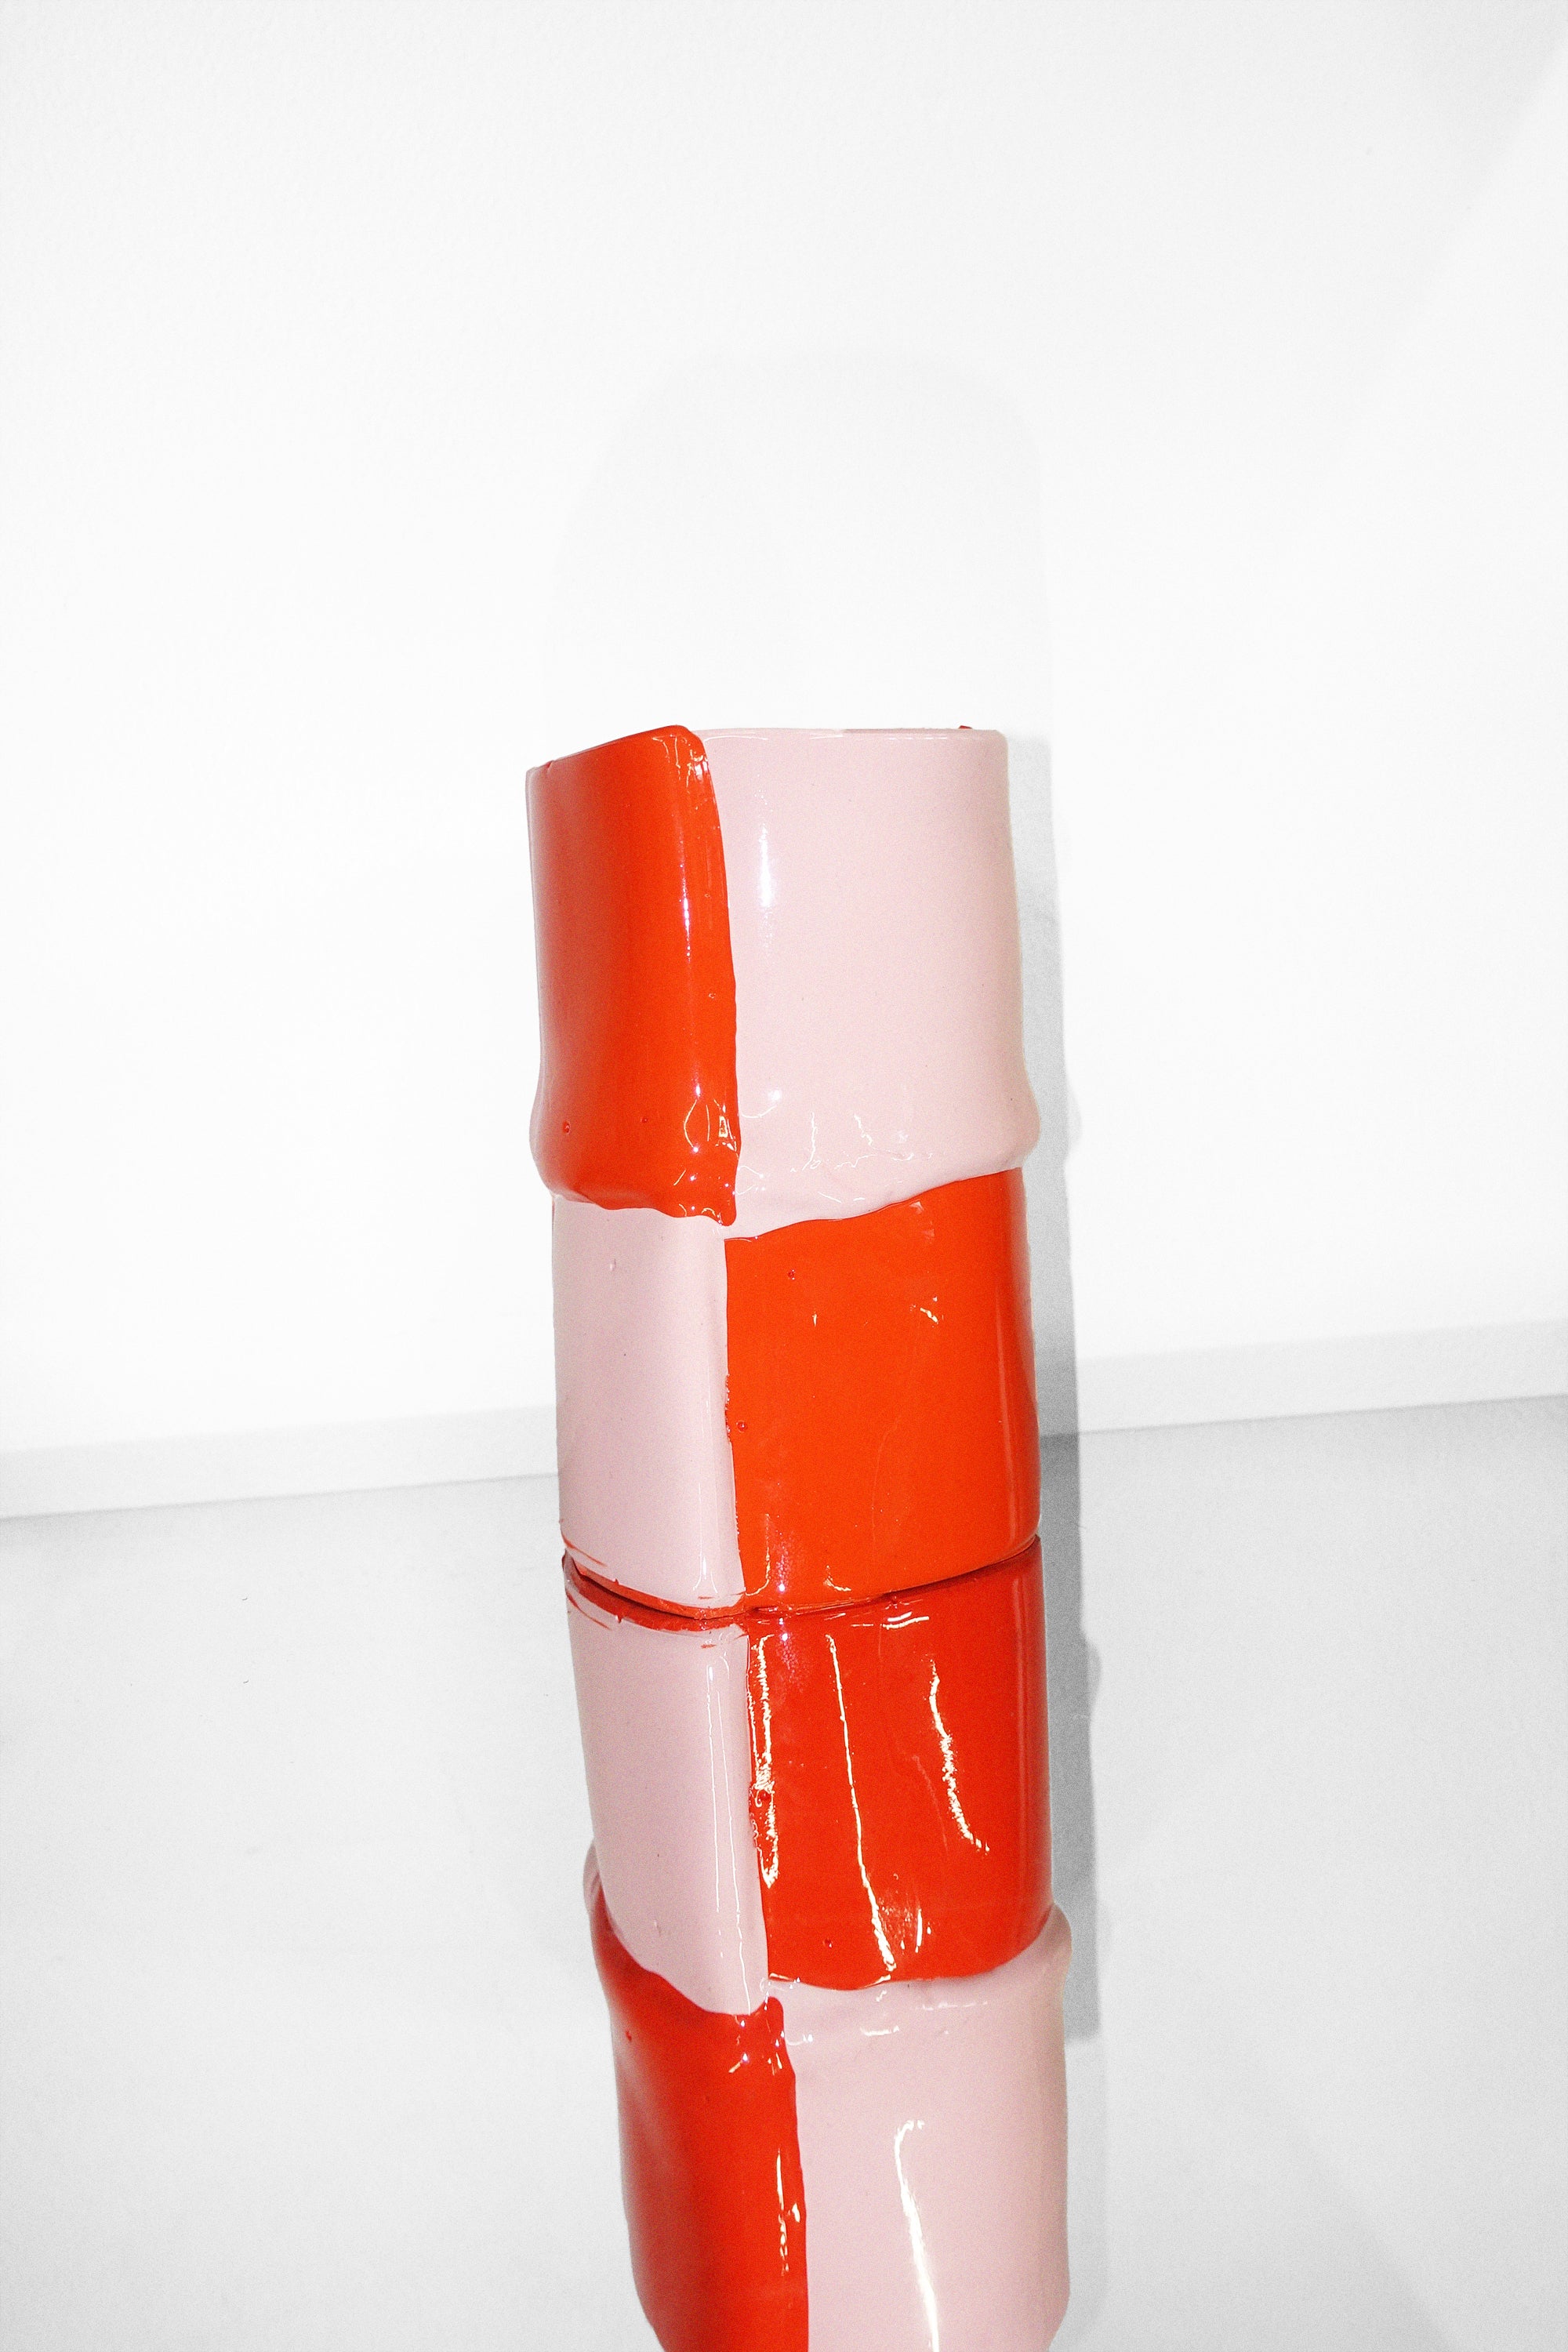 Small Bamboo Vase in Matte Orange & Matte Pastel Pink